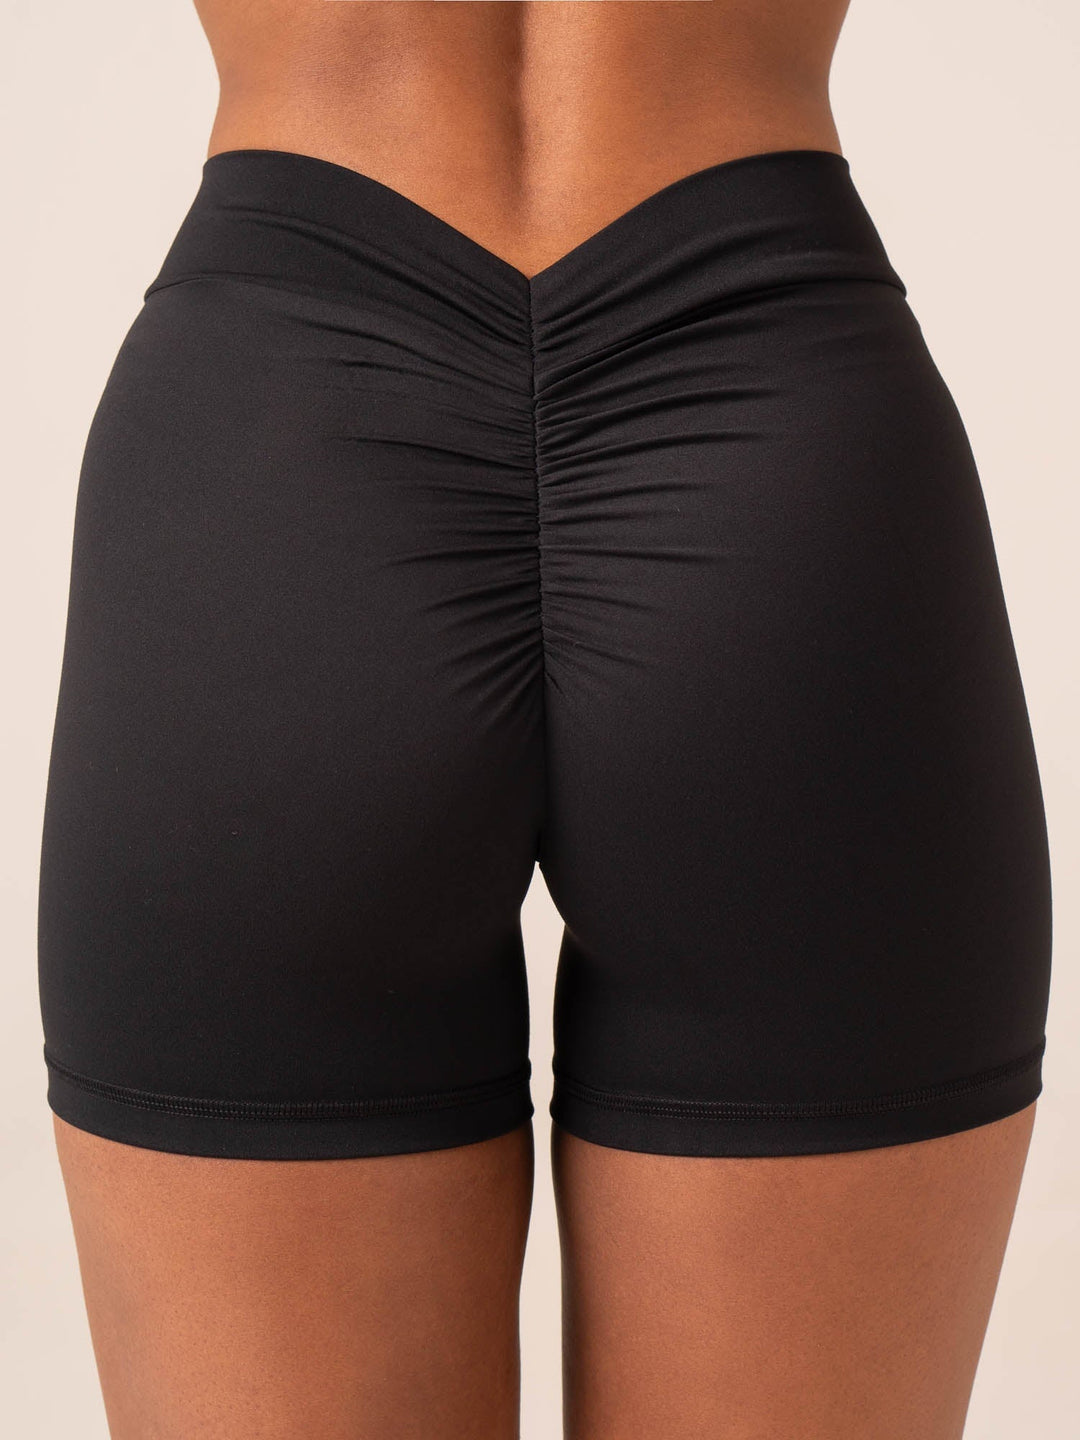 NKD V Scrunch Shorts - Black Clothing Ryderwear 